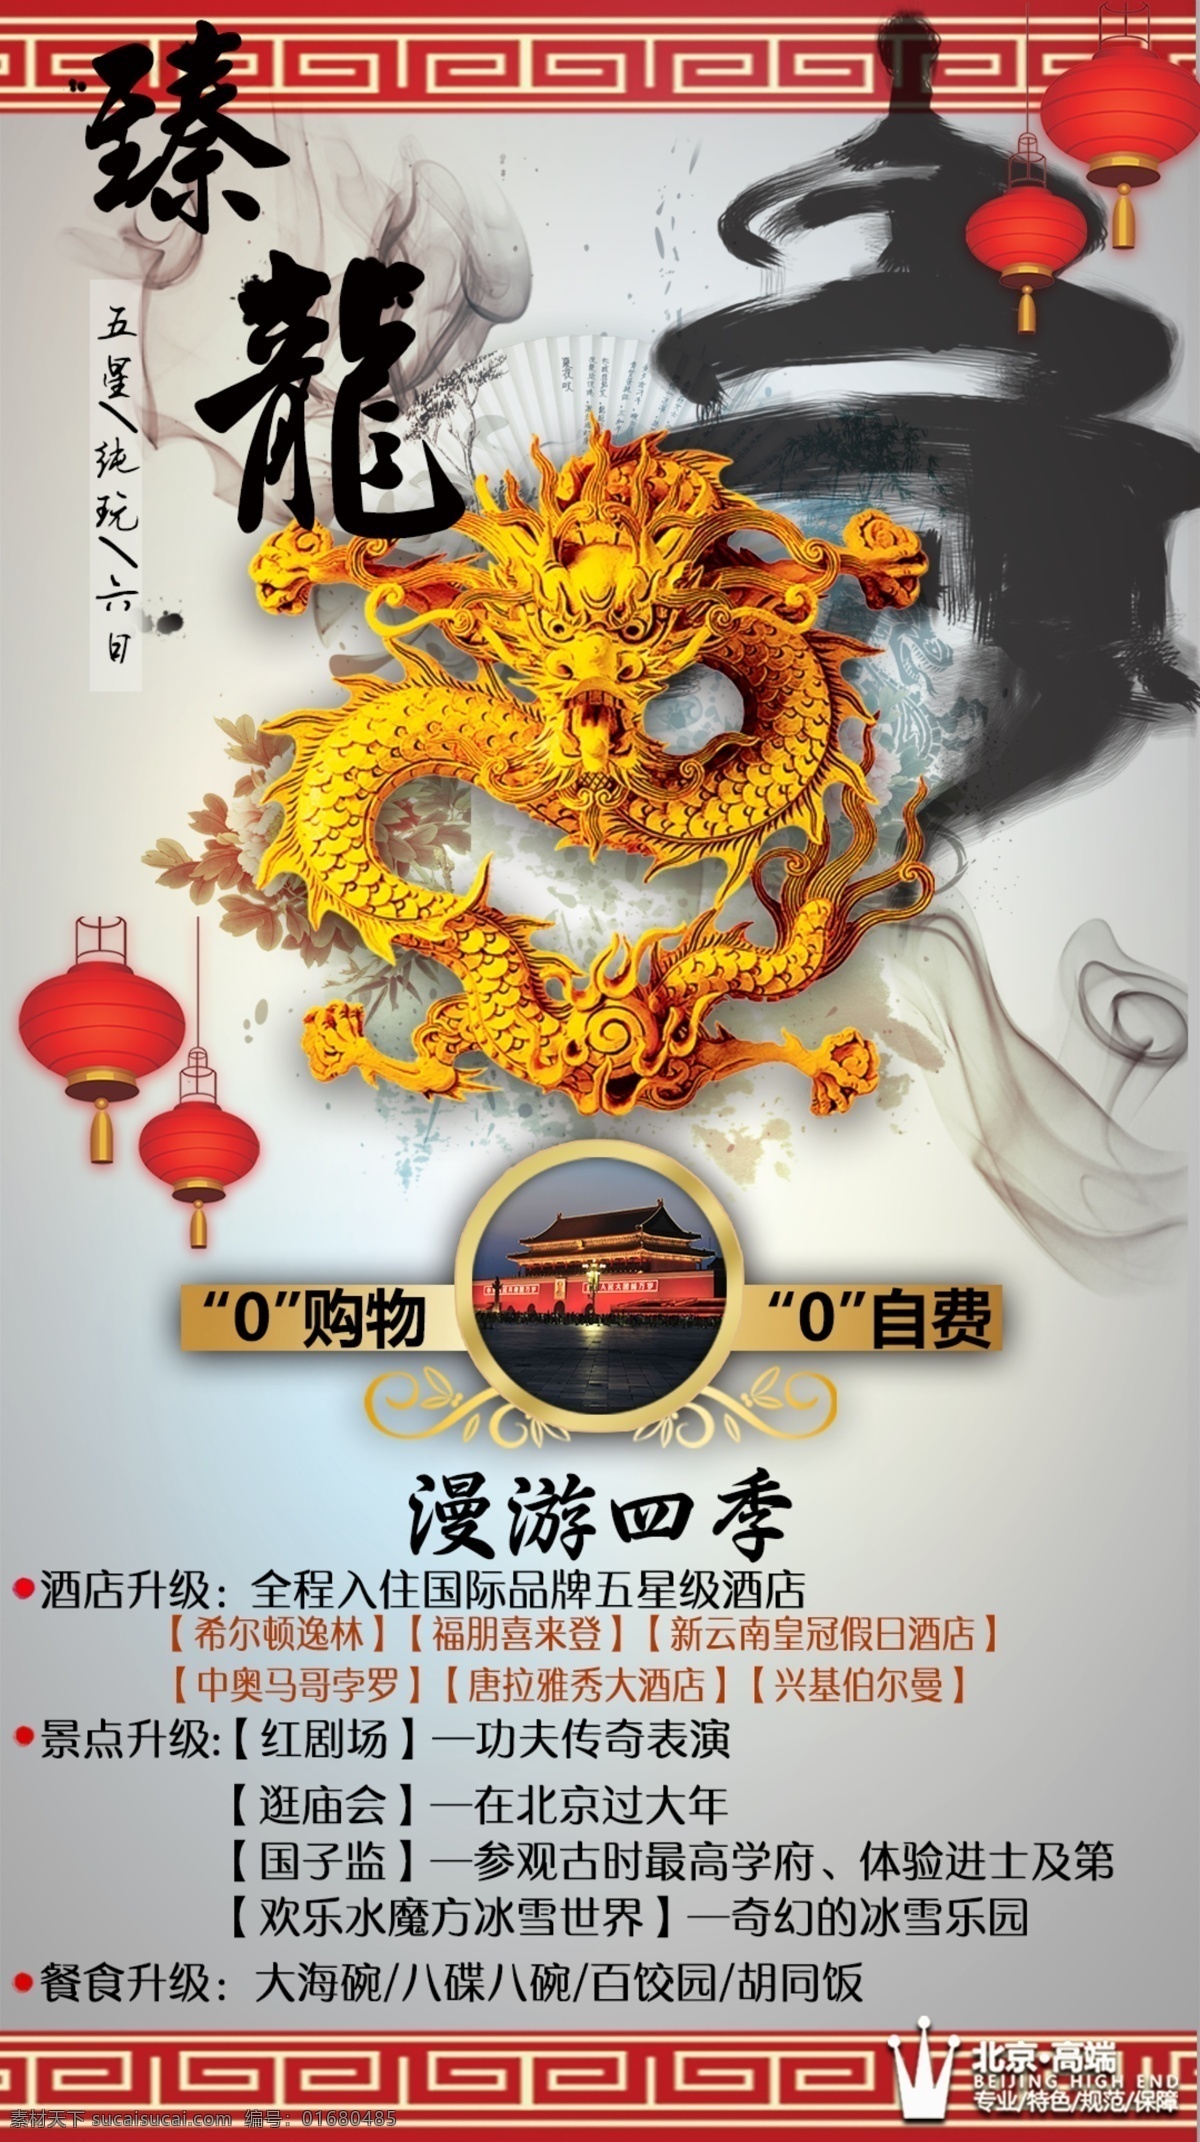 臻 龍 春节 北京 旅游 海报 臻龍 0购物0自费 高端酒店 欢乐 水 魔方 冰雪 世界